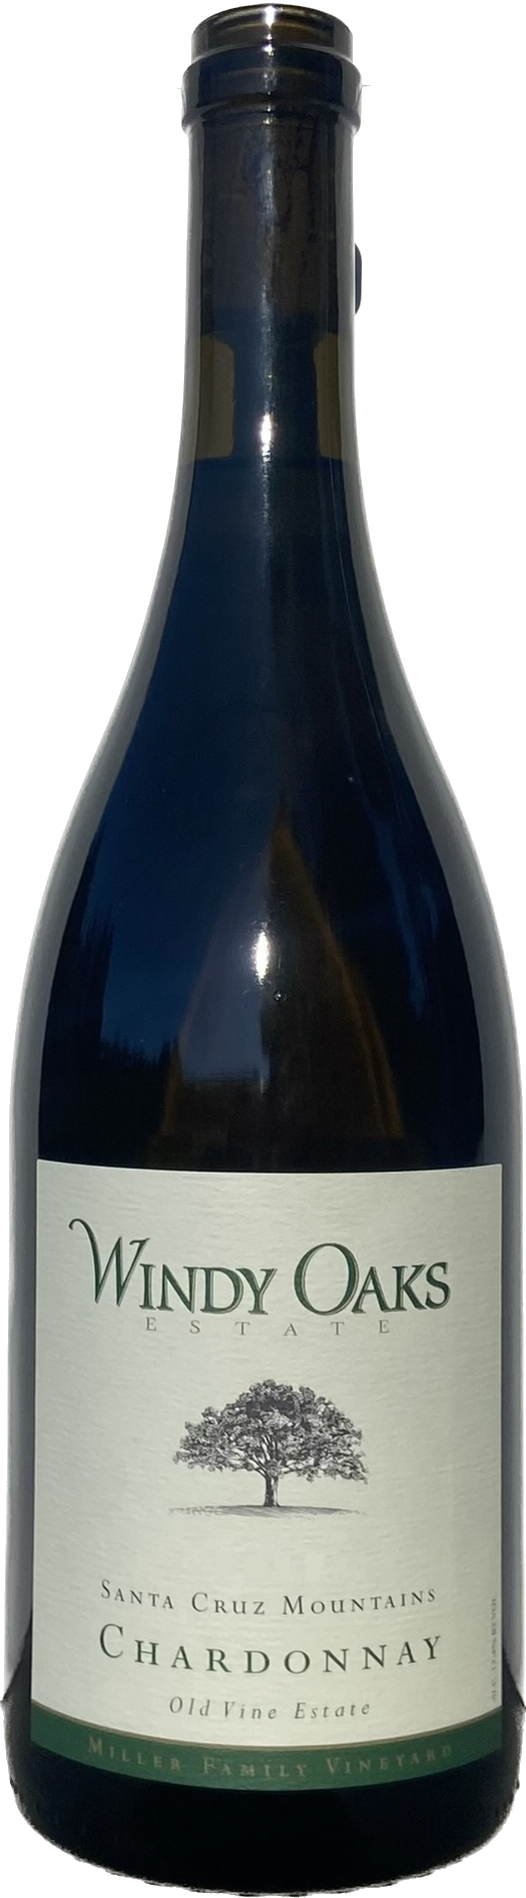 Product Image for 2017 Estate Chardonnay, Old Vine